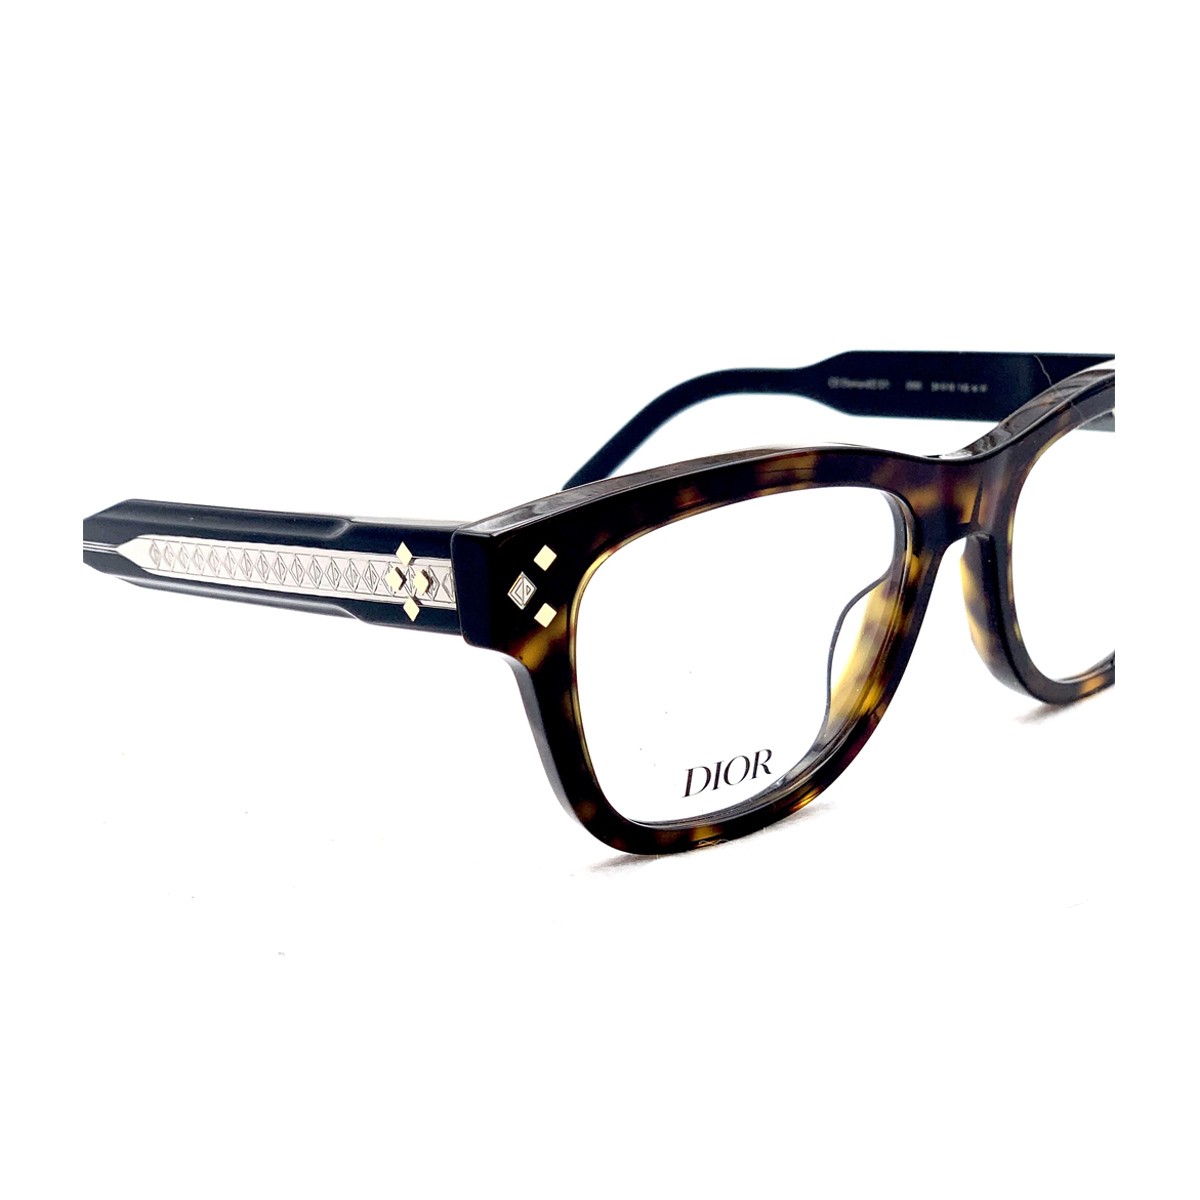 Christian Dior Eyewear  Buy Christian Dior Eyeglasses Frames Online for Men   Women